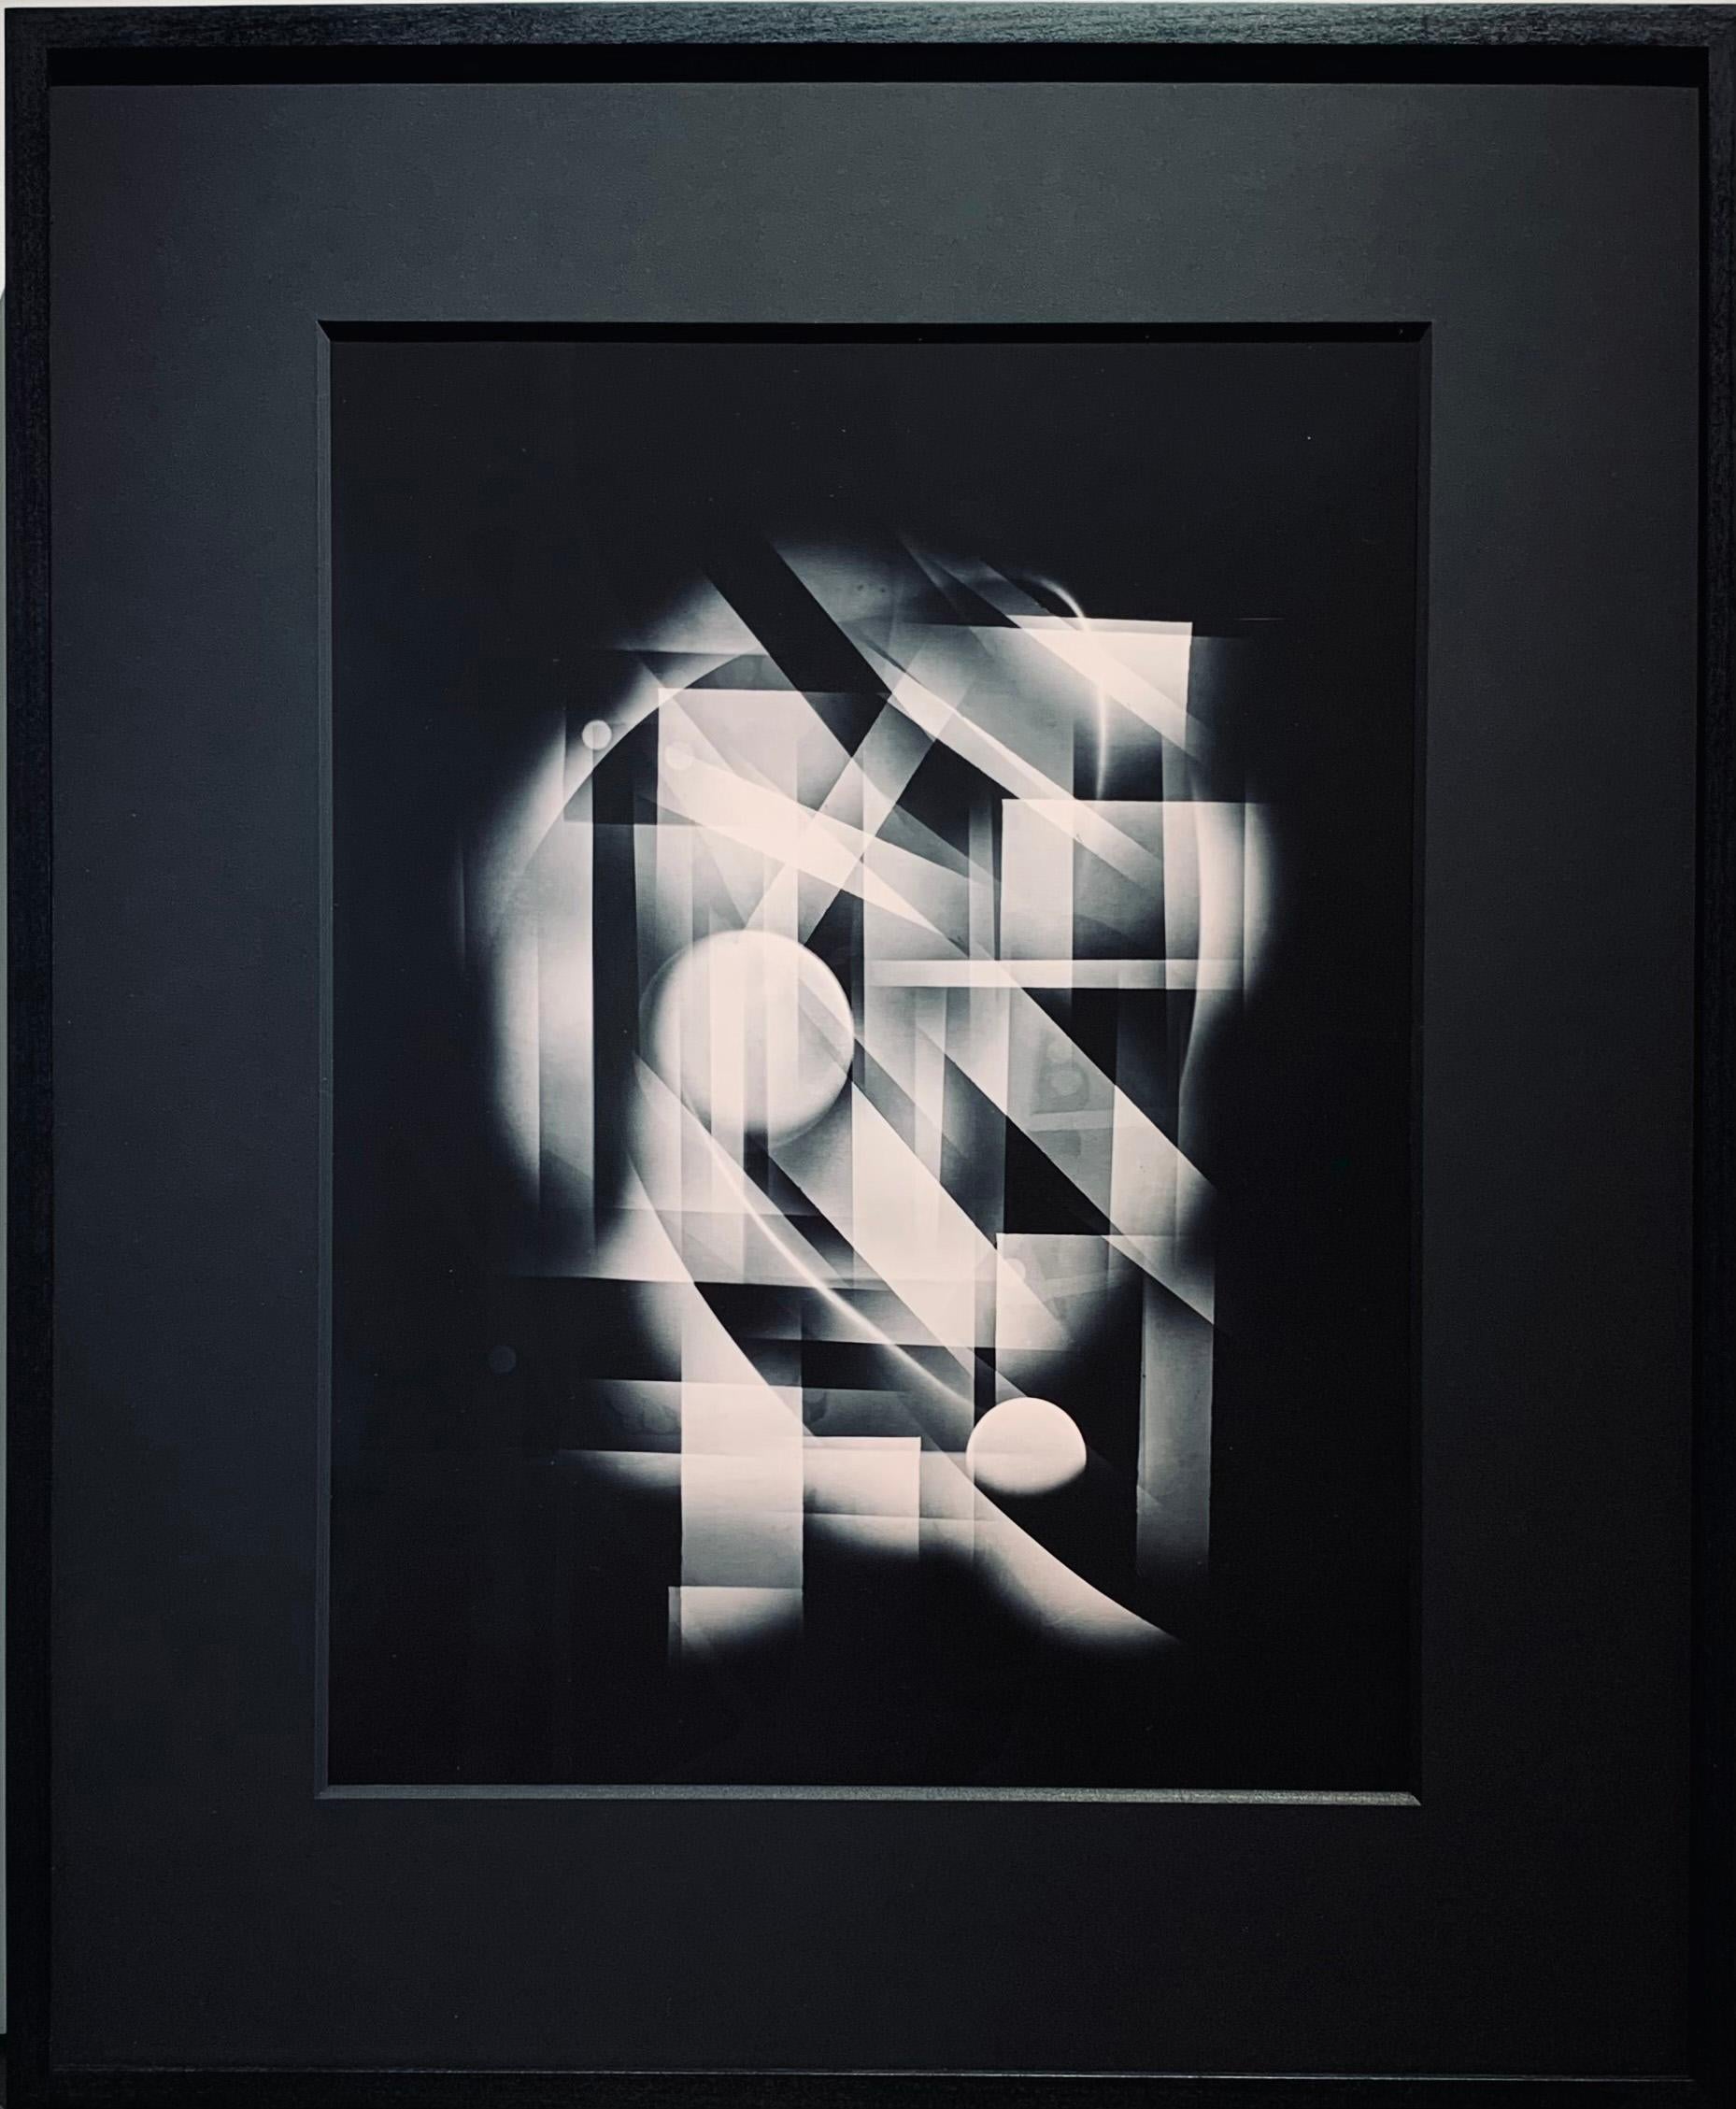 Michael G Jackson Abstract Print – Abstrakter schwarzer und weißer Luminogrammdruck des Central Park in New York City